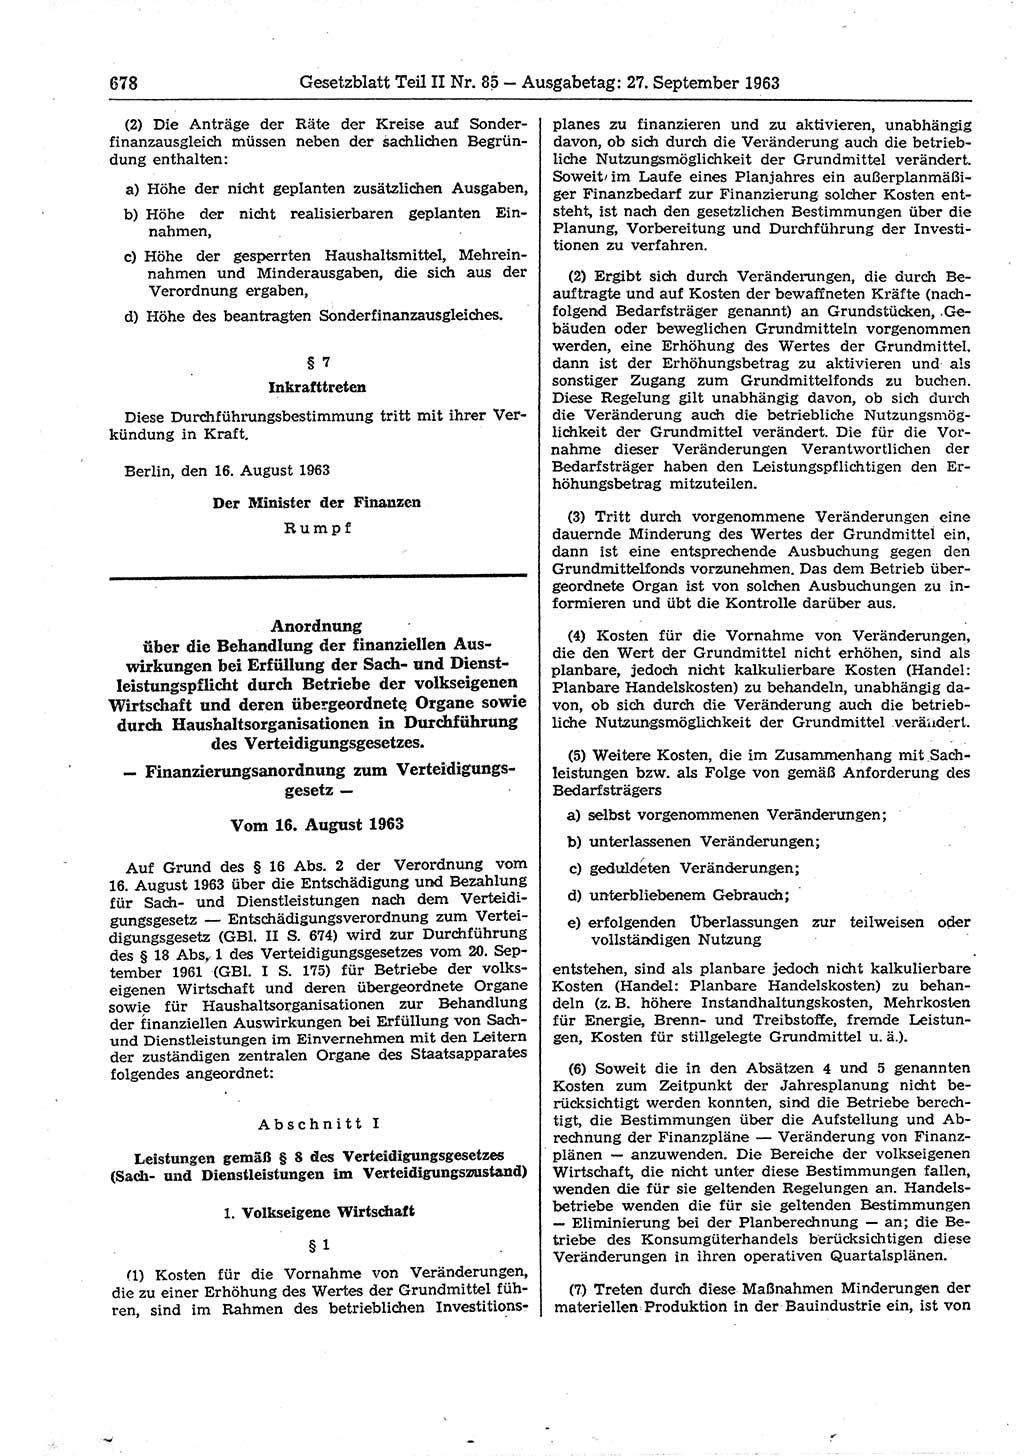 Gesetzblatt (GBl.) der Deutschen Demokratischen Republik (DDR) Teil ⅠⅠ 1963, Seite 678 (GBl. DDR ⅠⅠ 1963, S. 678)